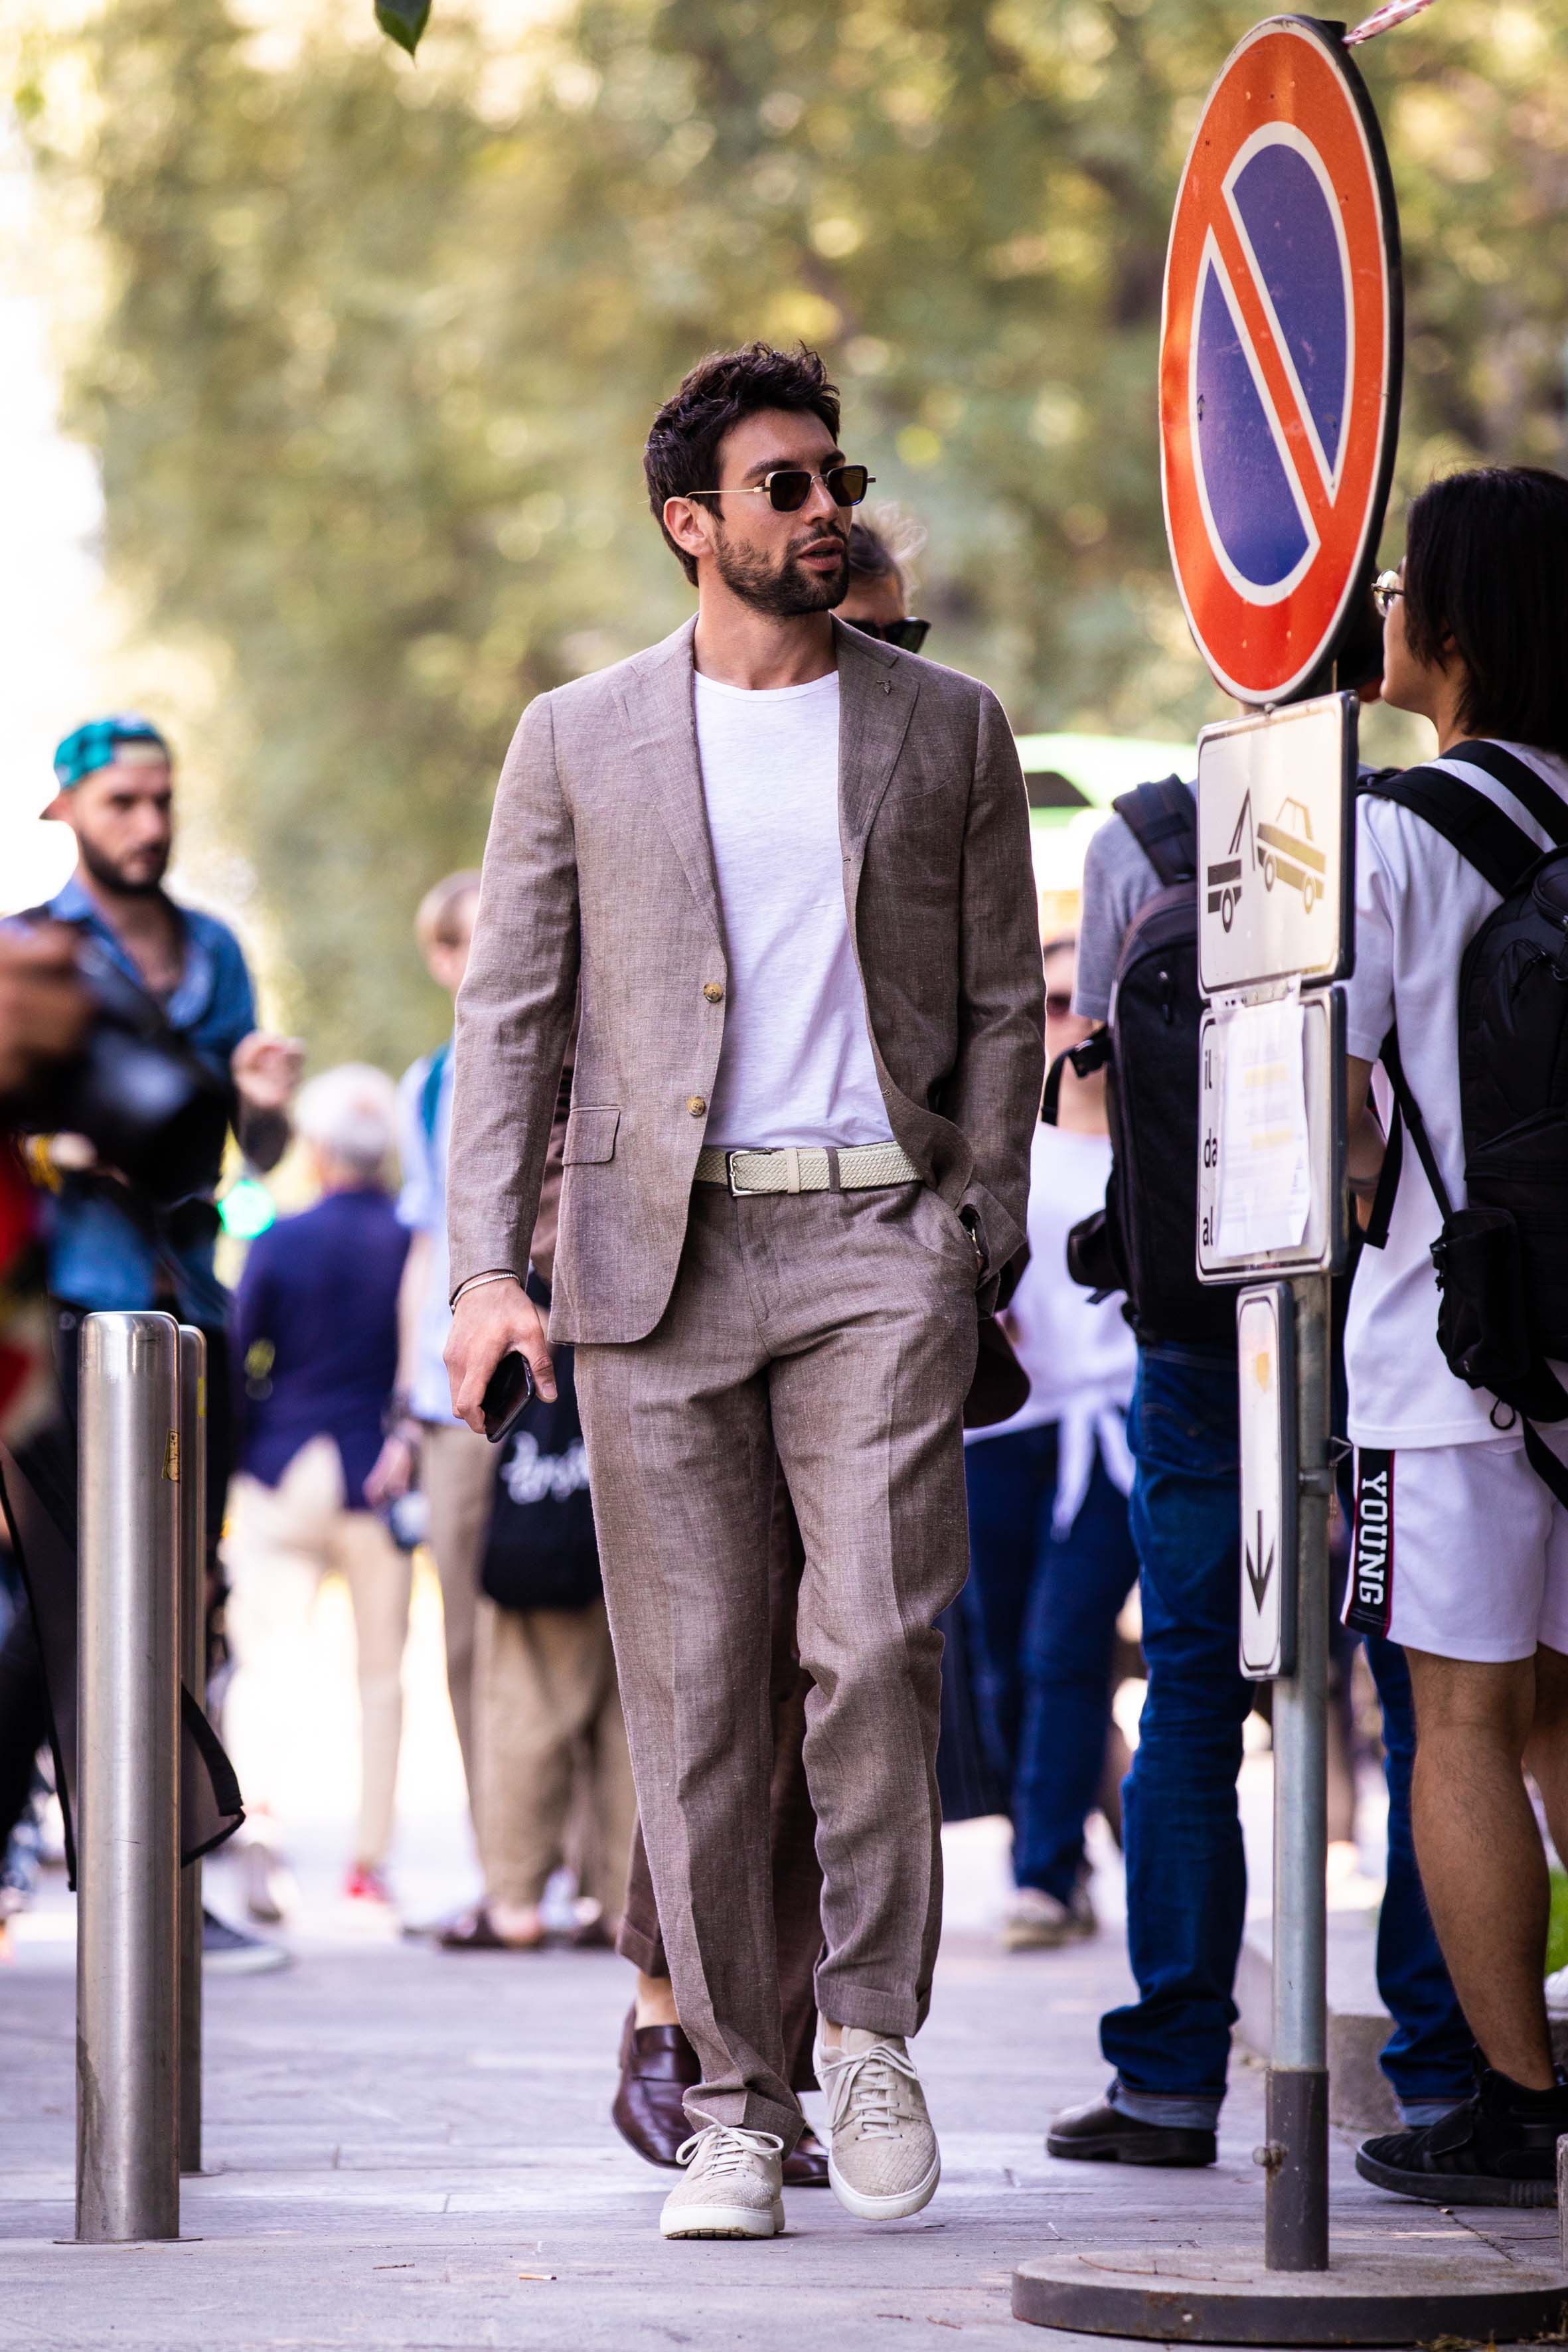 Man style in Milan